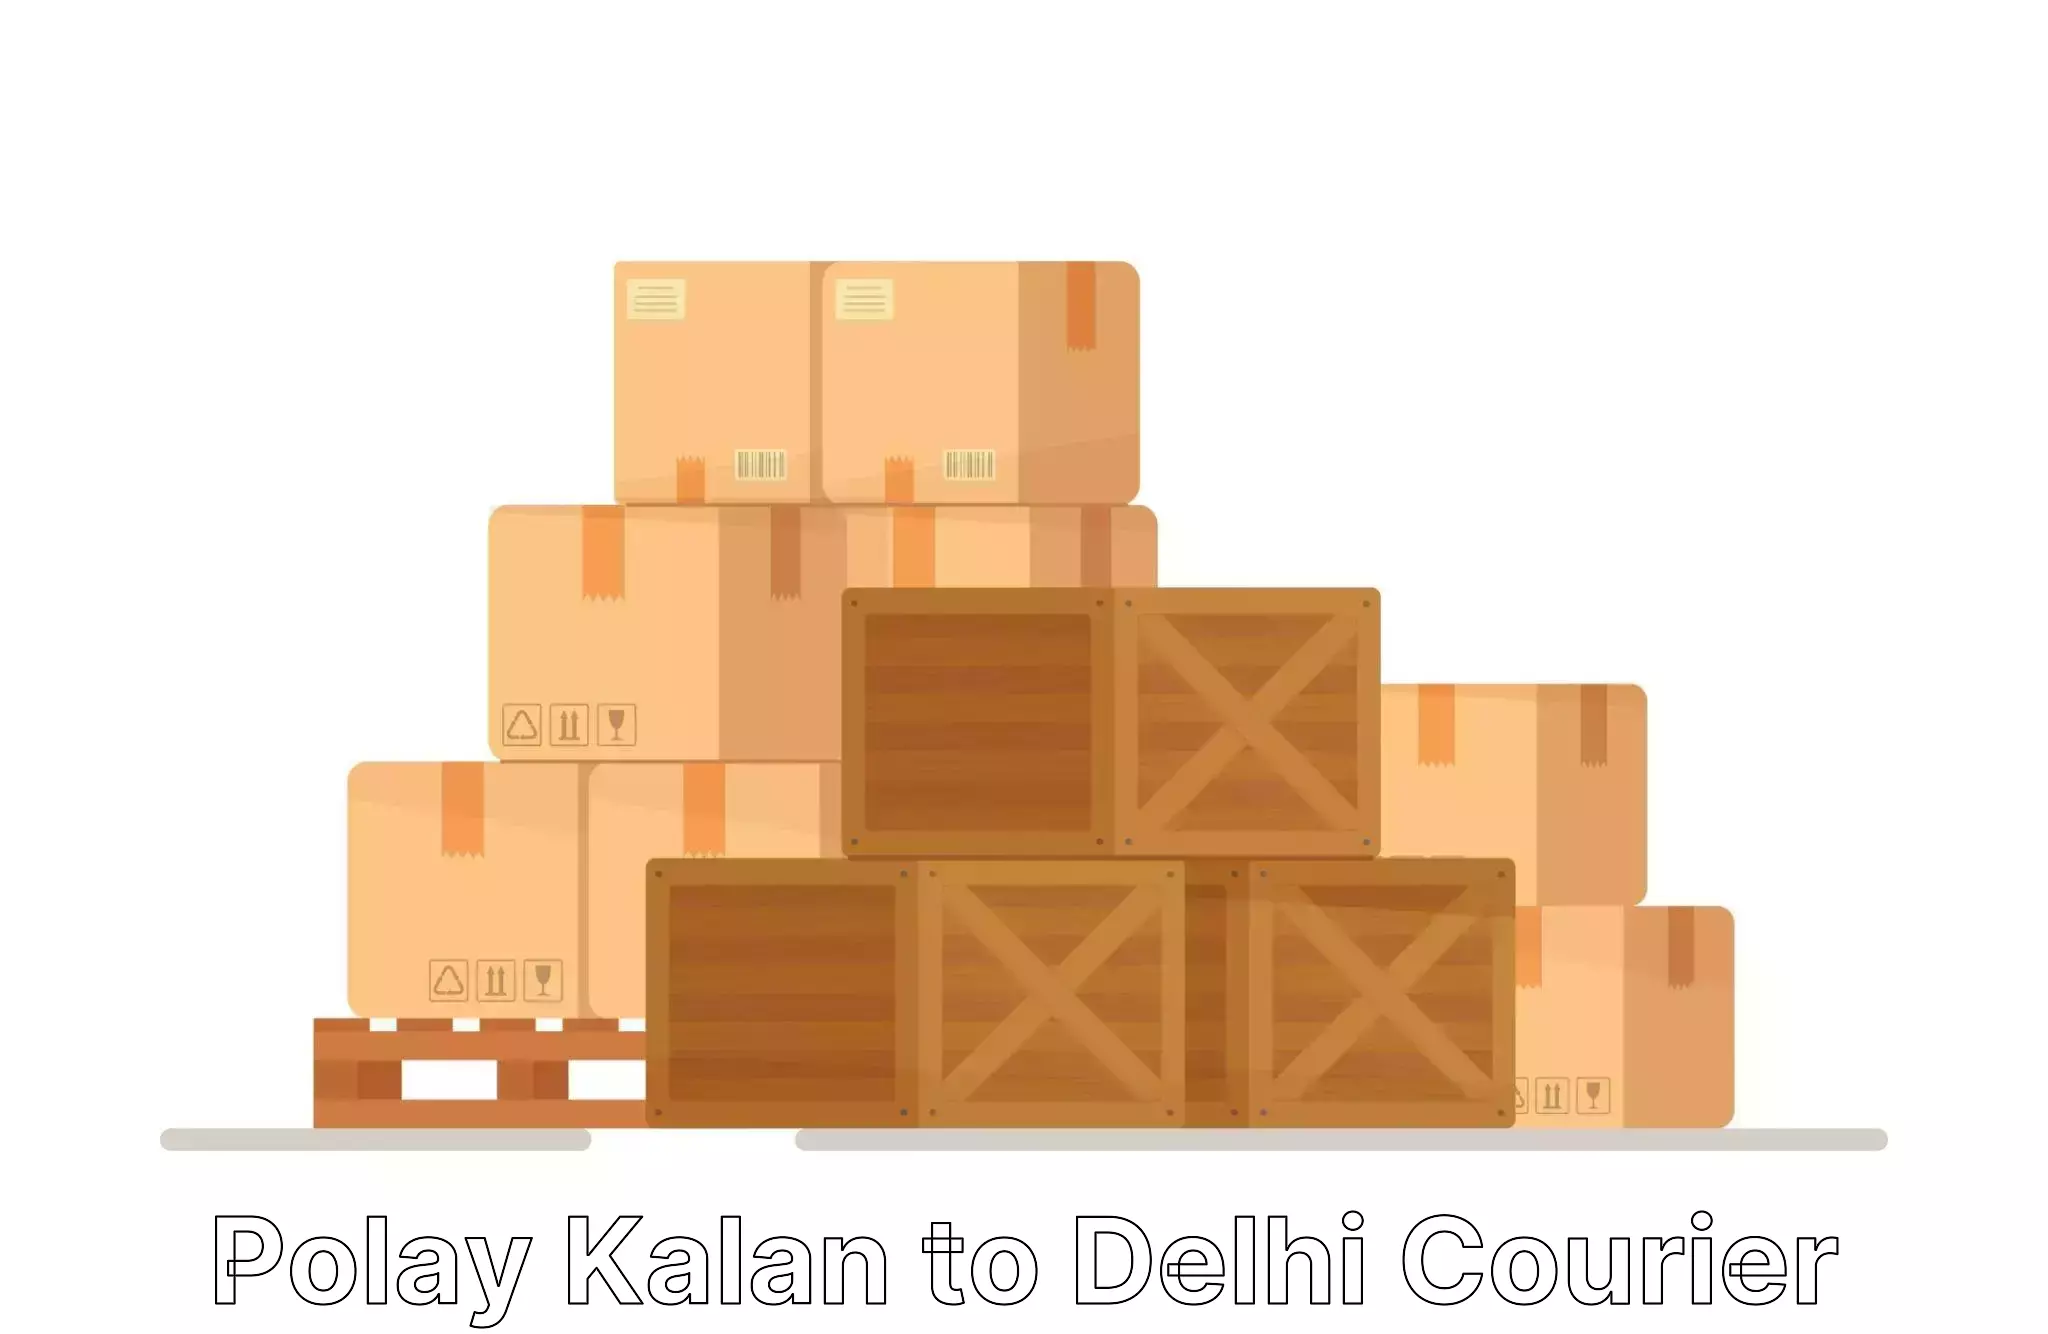 Budget-friendly moving services Polay Kalan to Jamia Millia Islamia New Delhi